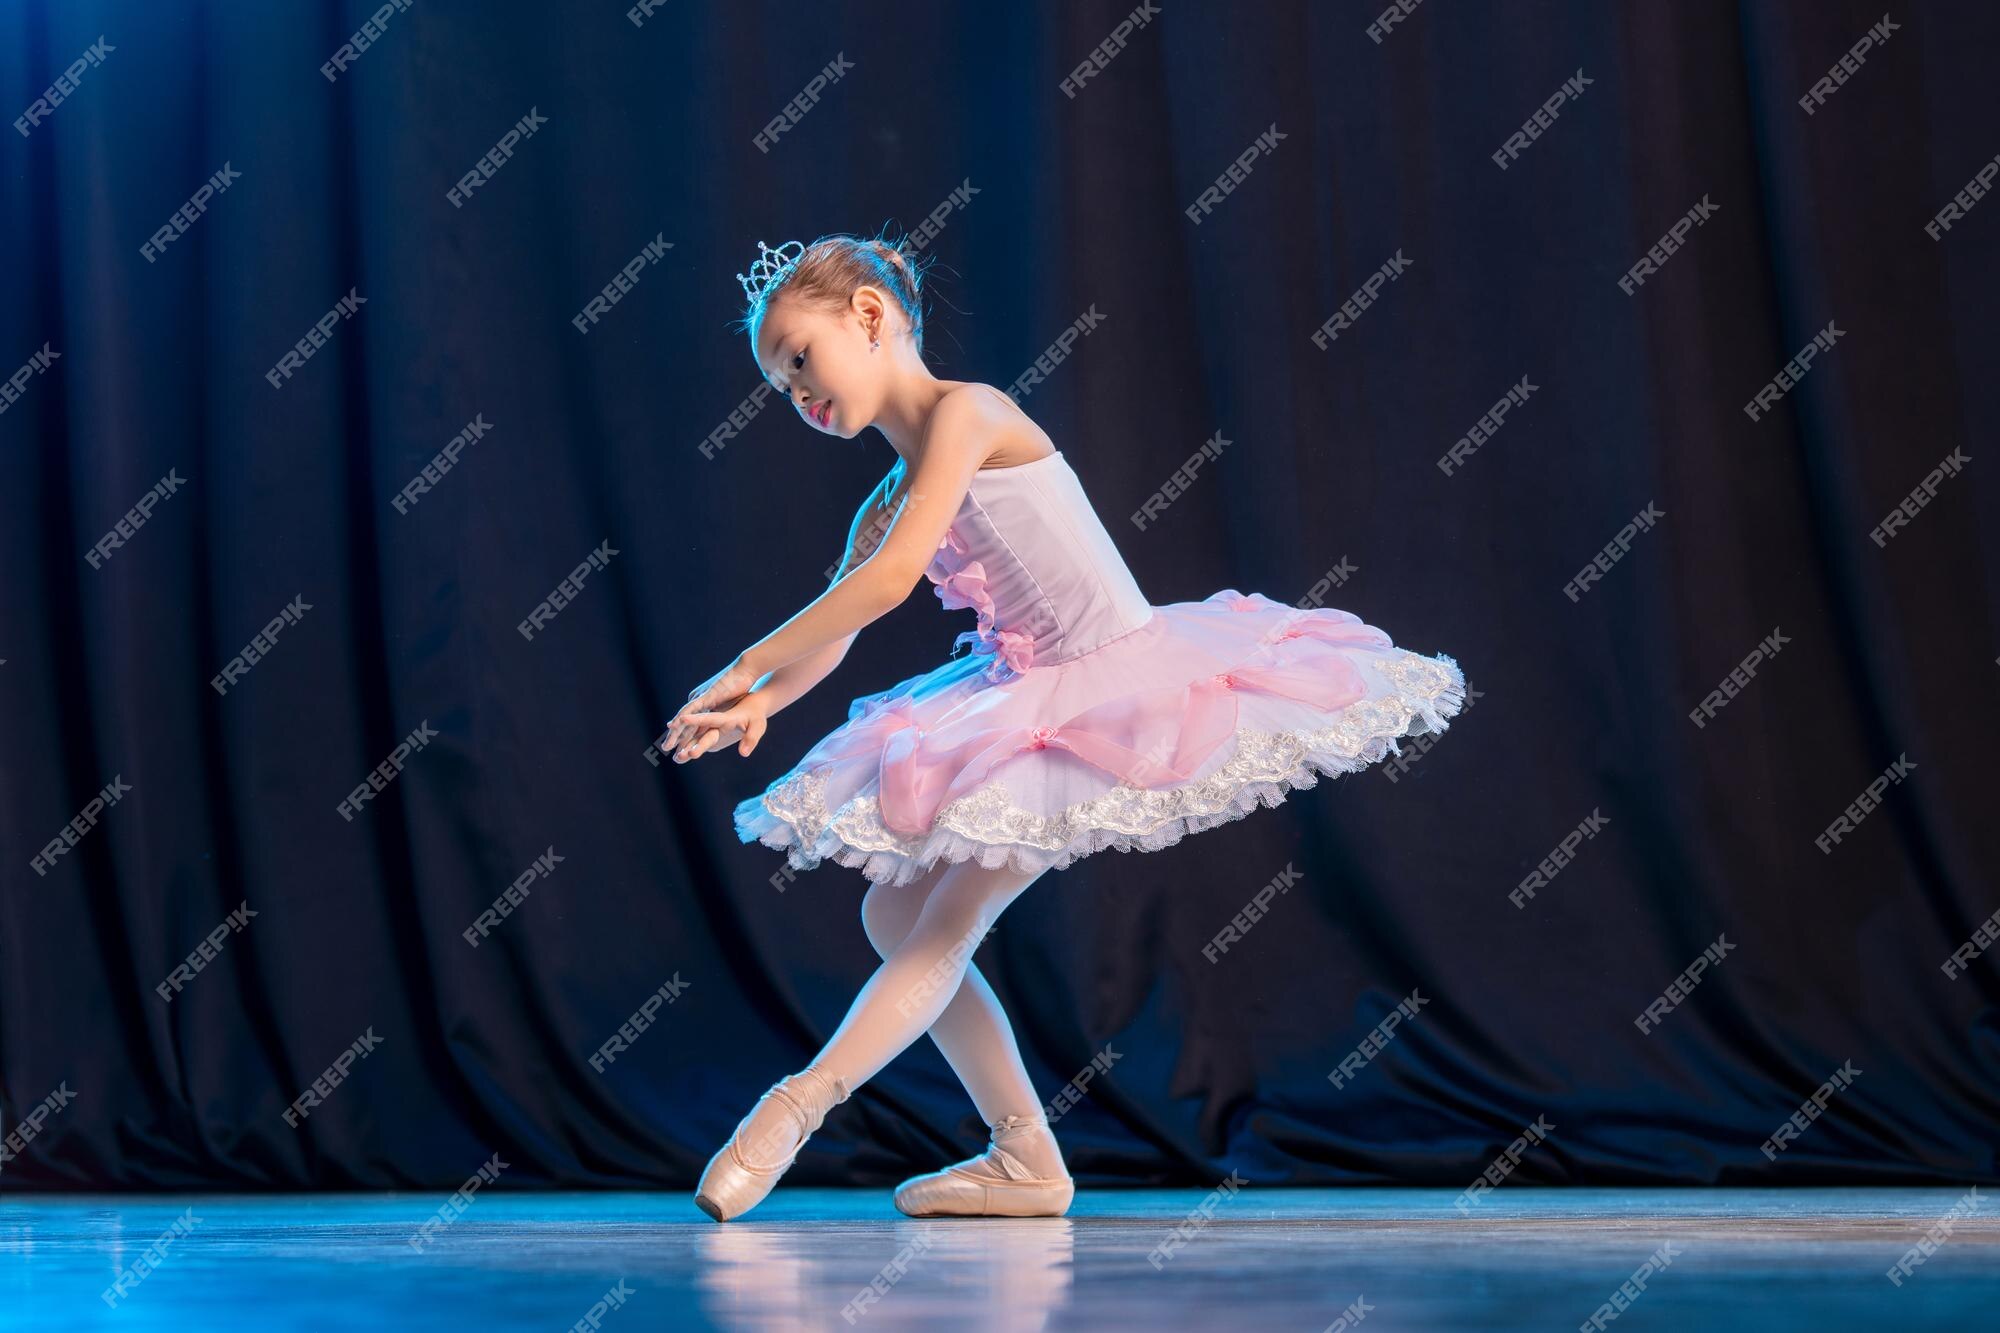 La bailarina de la niña bailando el escenario en tutú blanco en la variación clásica zapatos de punta. | Foto Premium